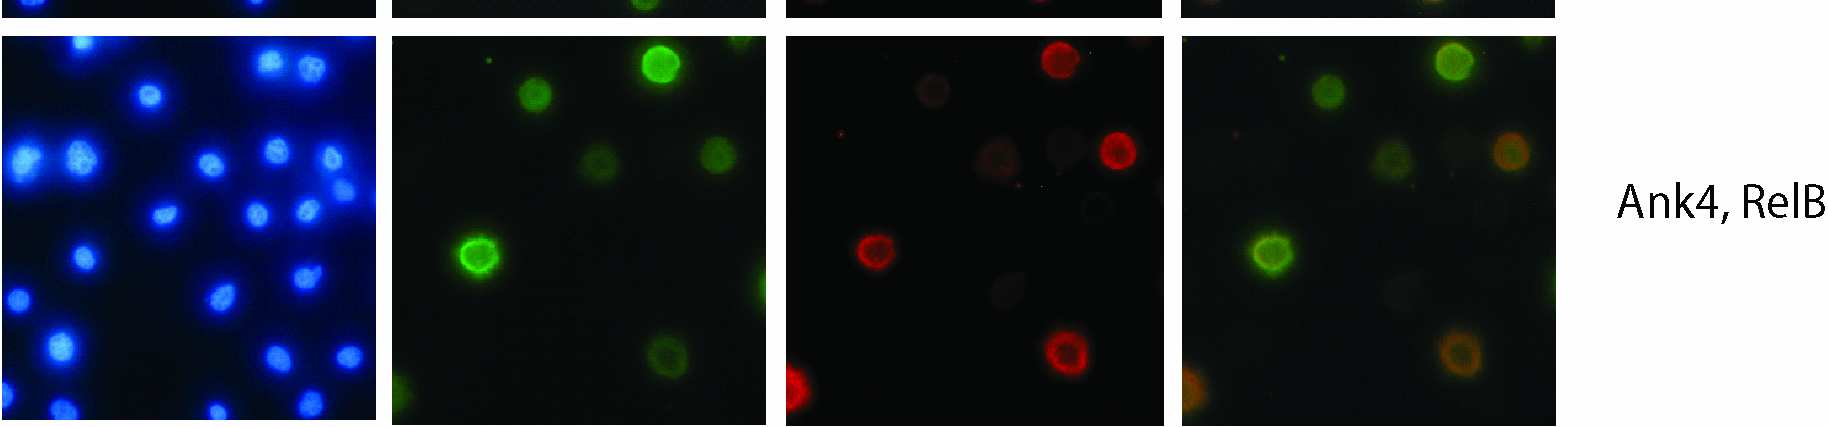 Εικόνα 37. Υποκυτταρικός εντοπισµός των πρωτεϊνών Ank µε τον µεταγραφικό παράγοντα RelB. Ο συνεντοπισµός του µεταγραφικού παράγοντα flag.relb µε τις Ank1, Ank2 ή Ank4 εµφανίζεται στο κυτταρόπλασµα.